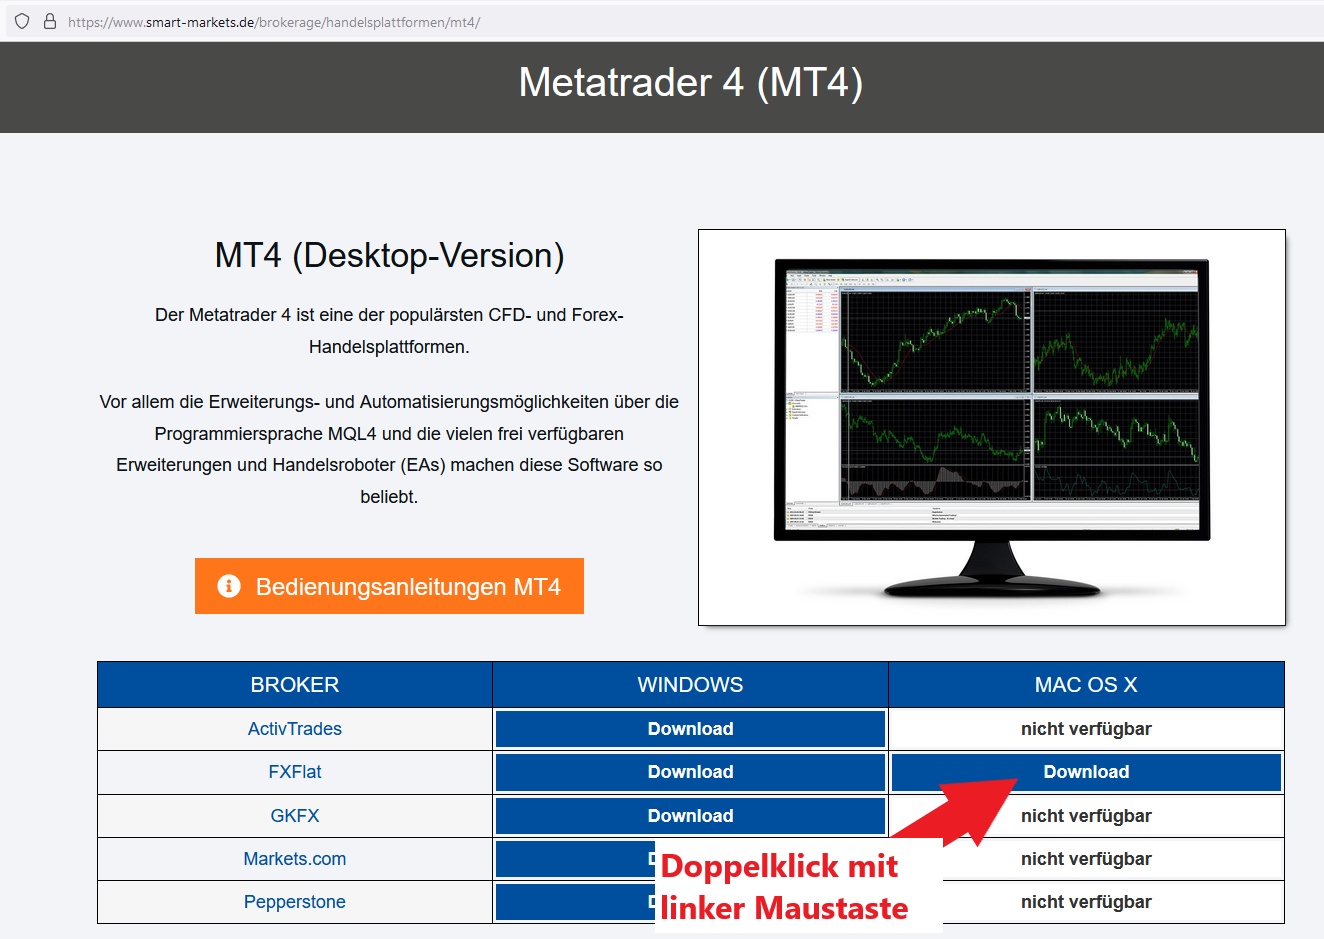 Tabelle mit Download-Dateien des Metatraders 4 für MacOS